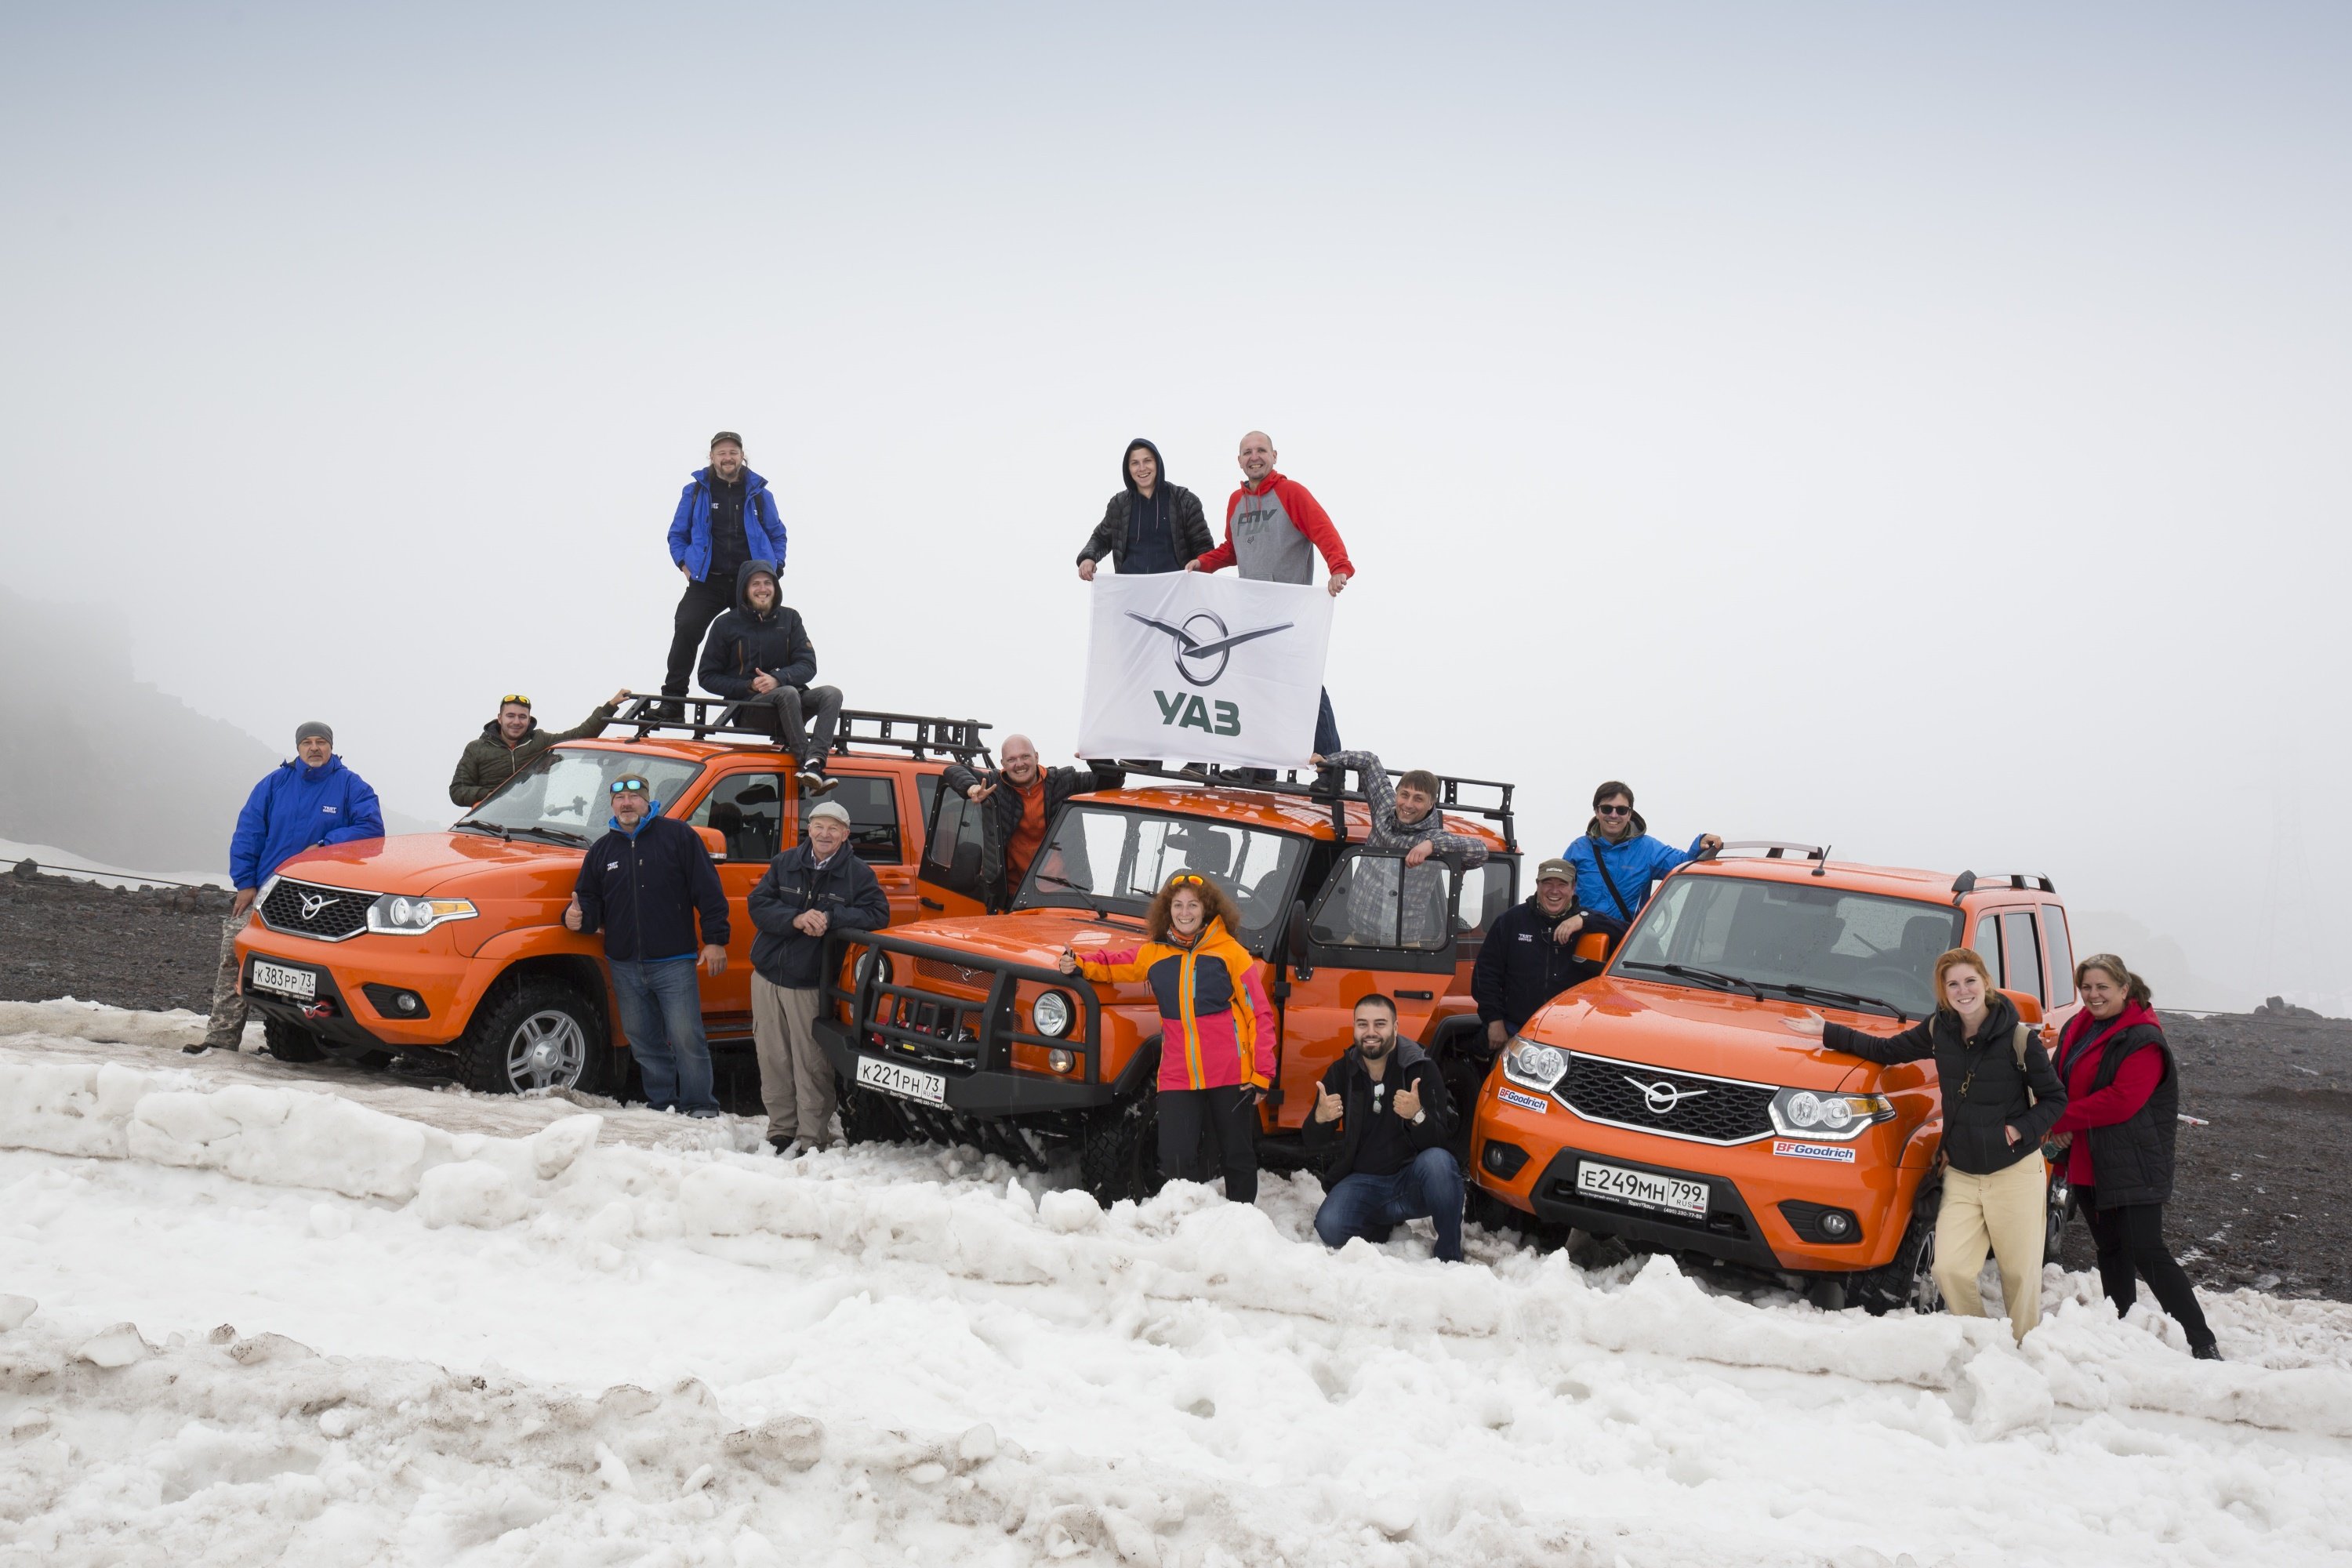 Ульяновский автозавод отметил 45-летний юбилей экспедиции на Эльбрус.